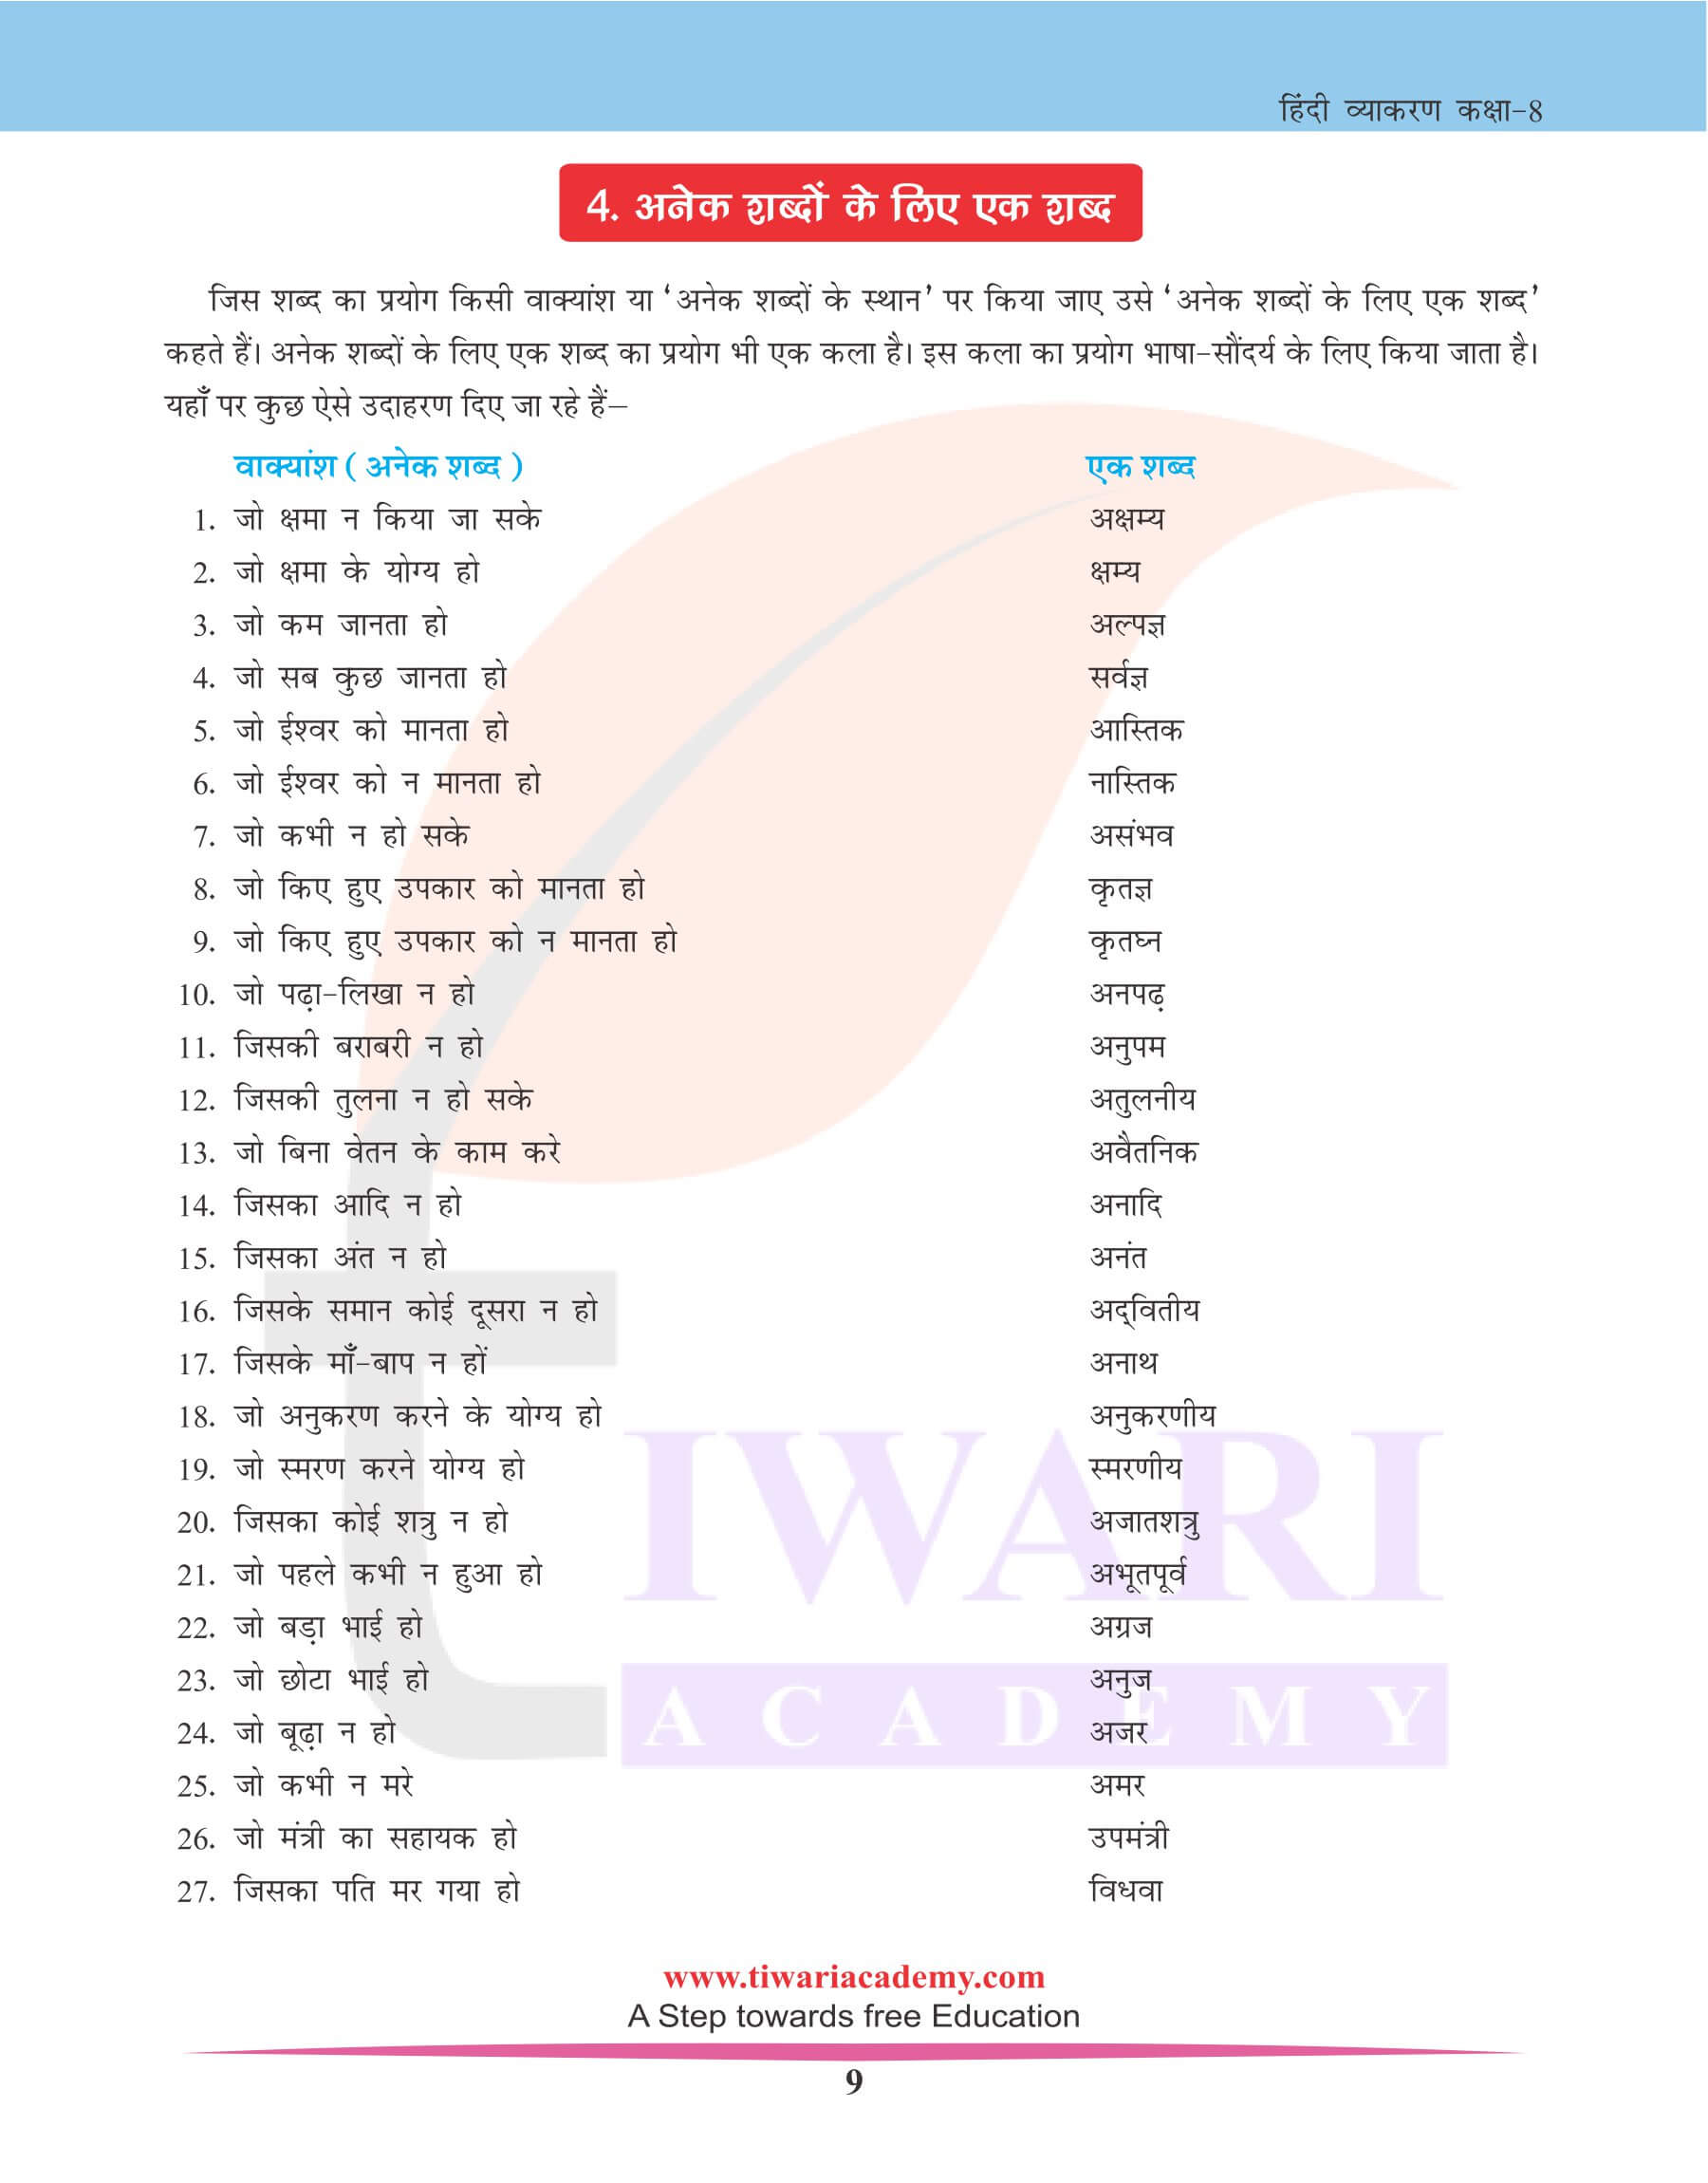 कक्षा 8 हिंदी व्याकरण में अनेक के लिए एक शब्द